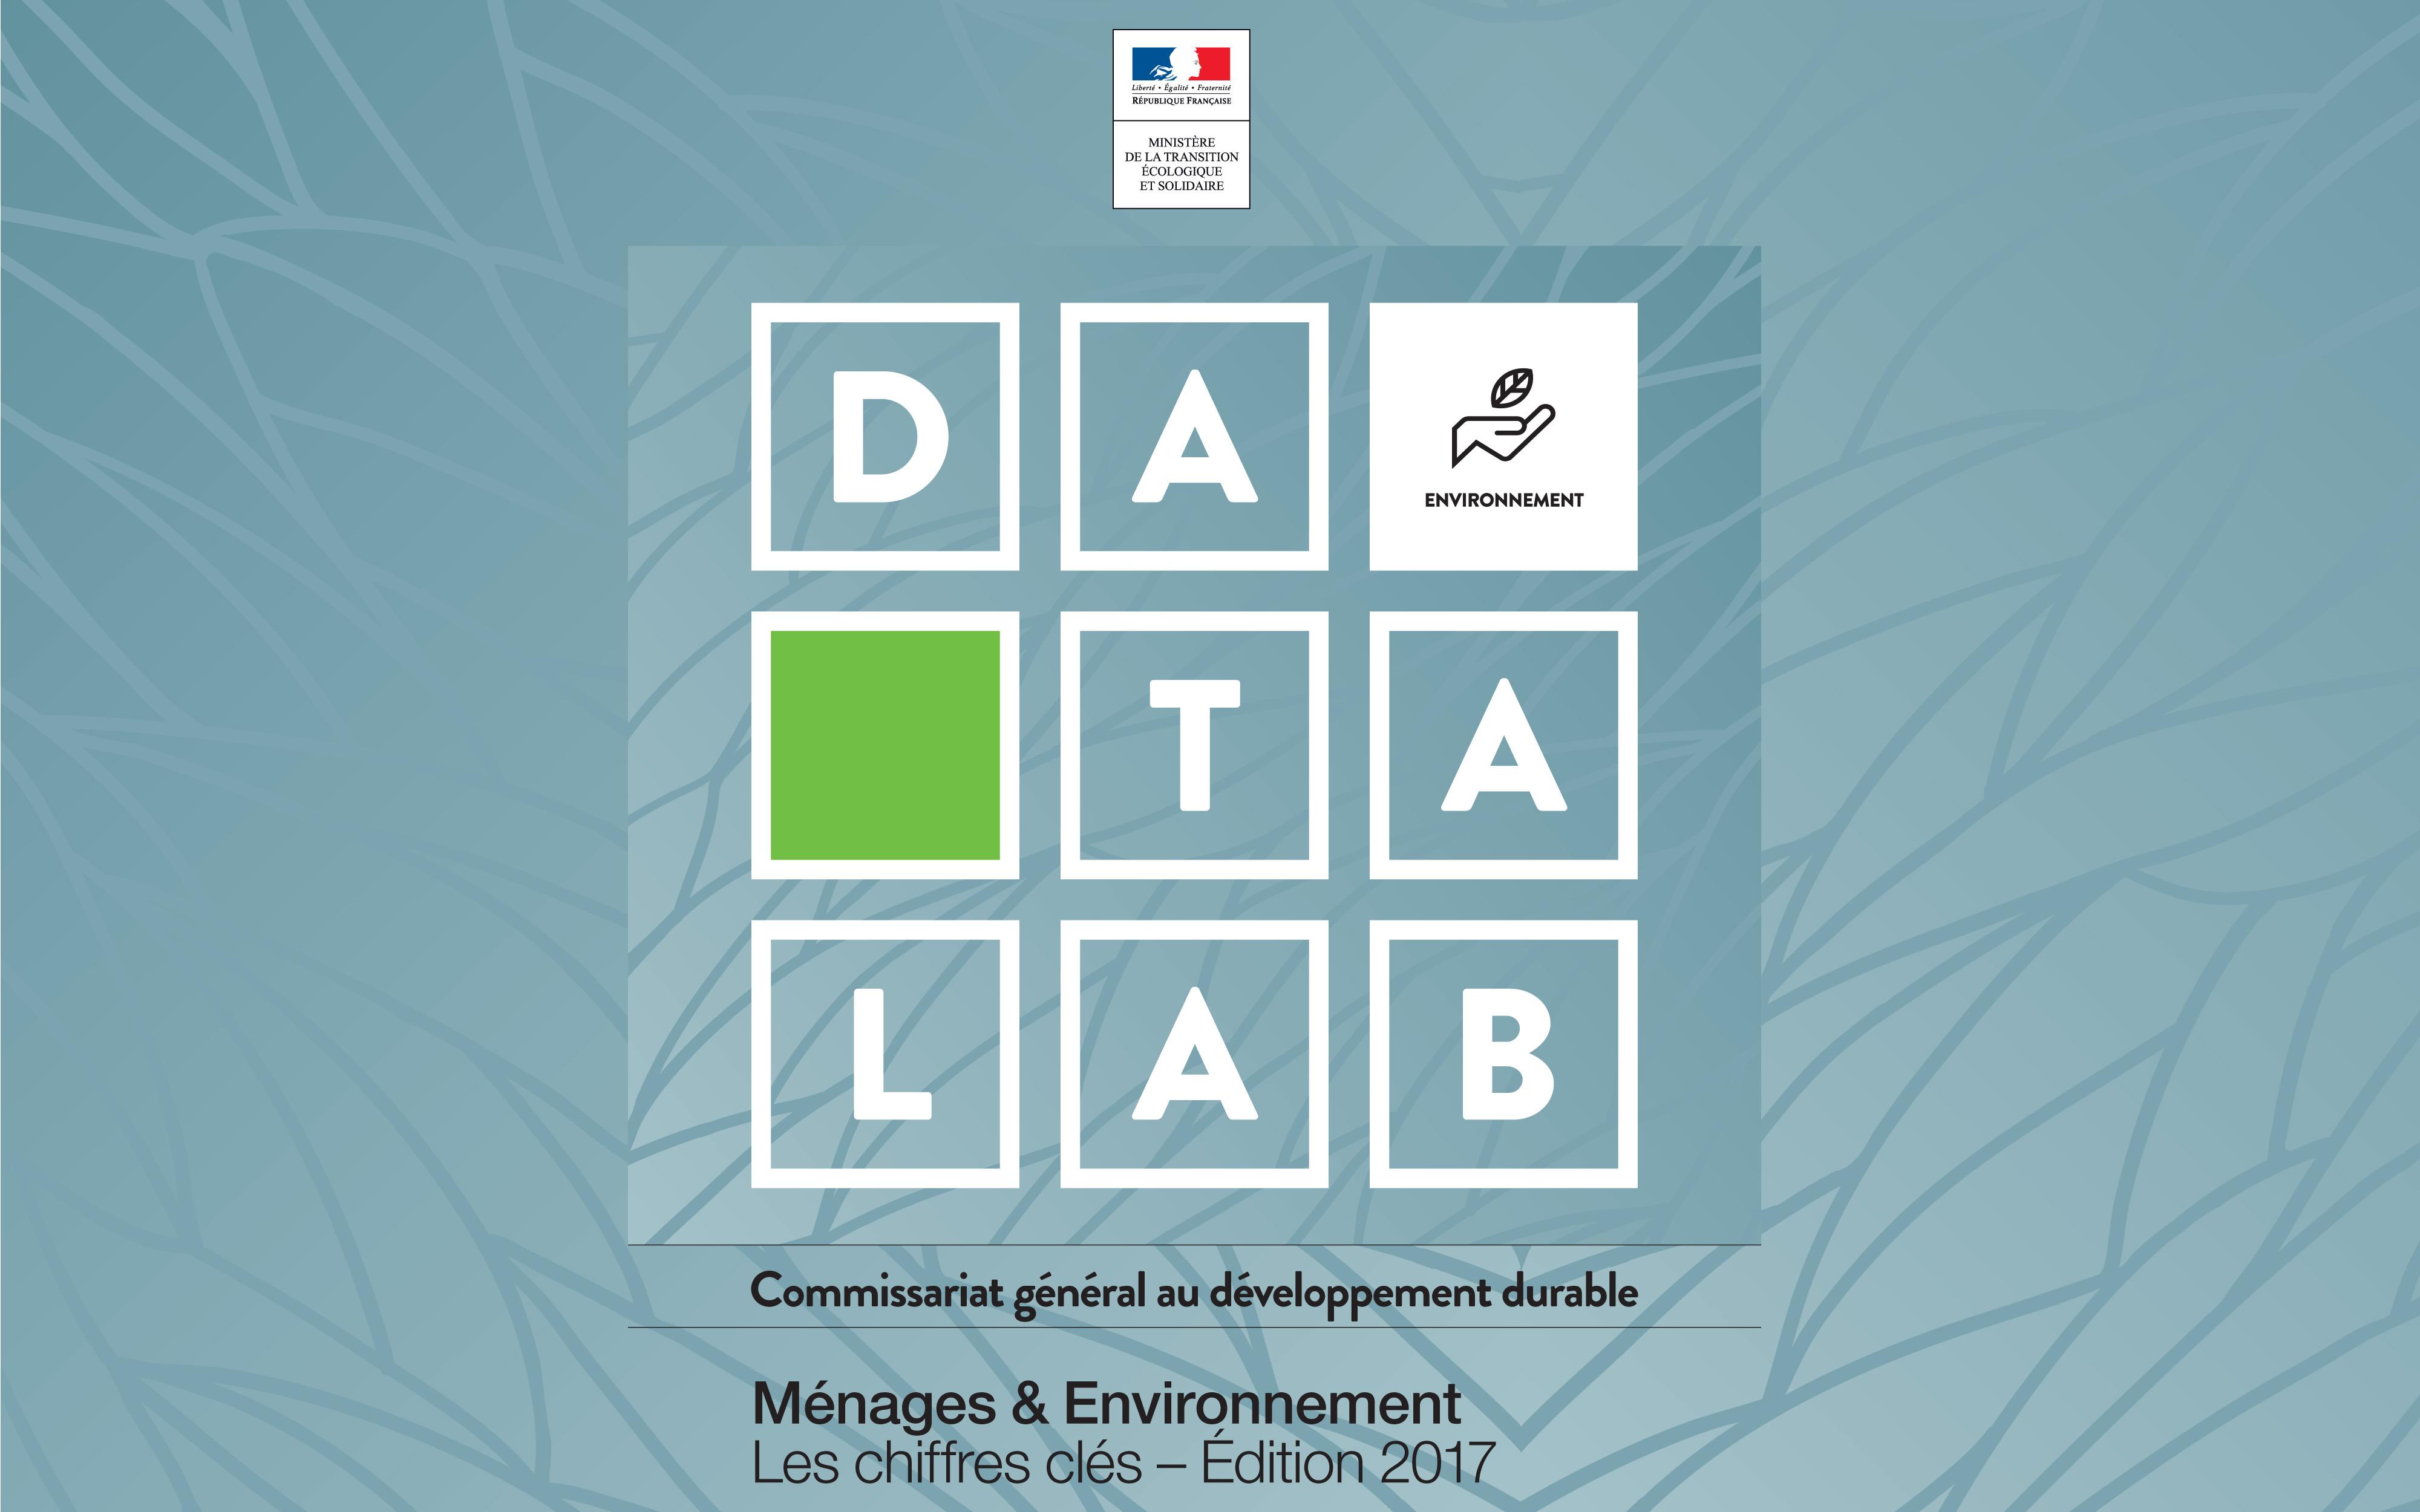 Datalab Ménages & Environnement - Les chiffres clés – Édition 2017